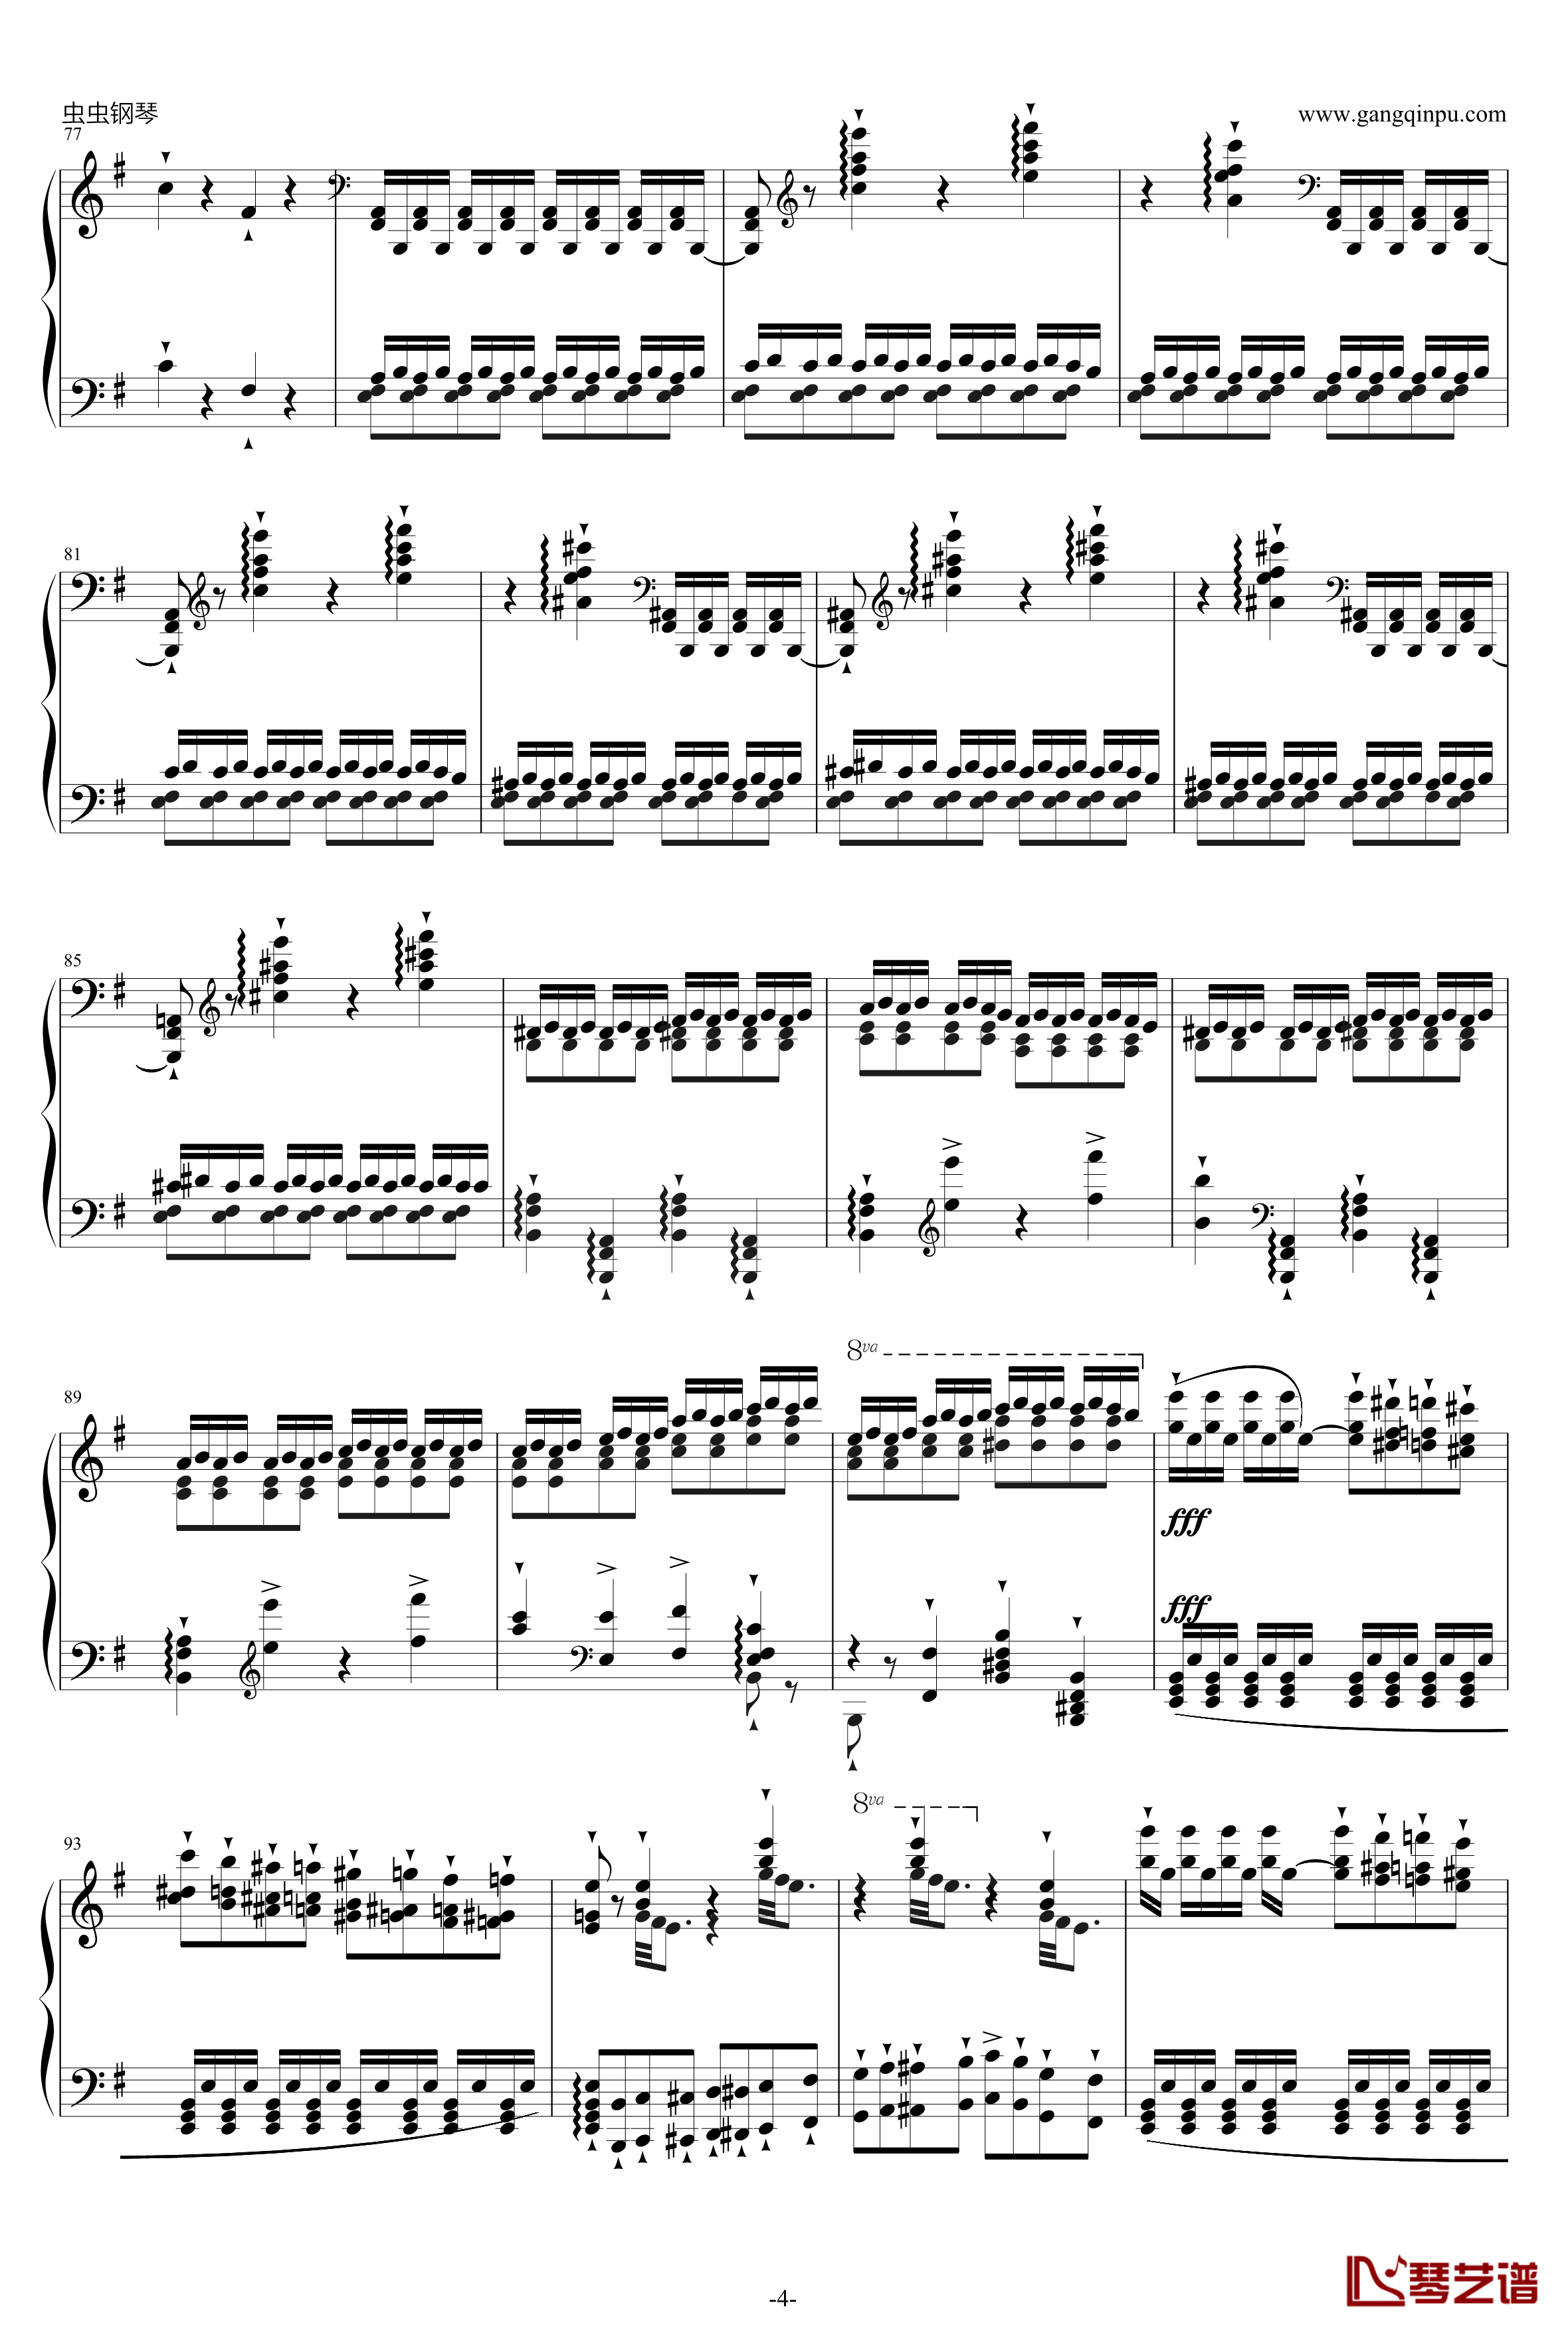 威廉·退尔序曲钢琴谱-李斯特S.5524